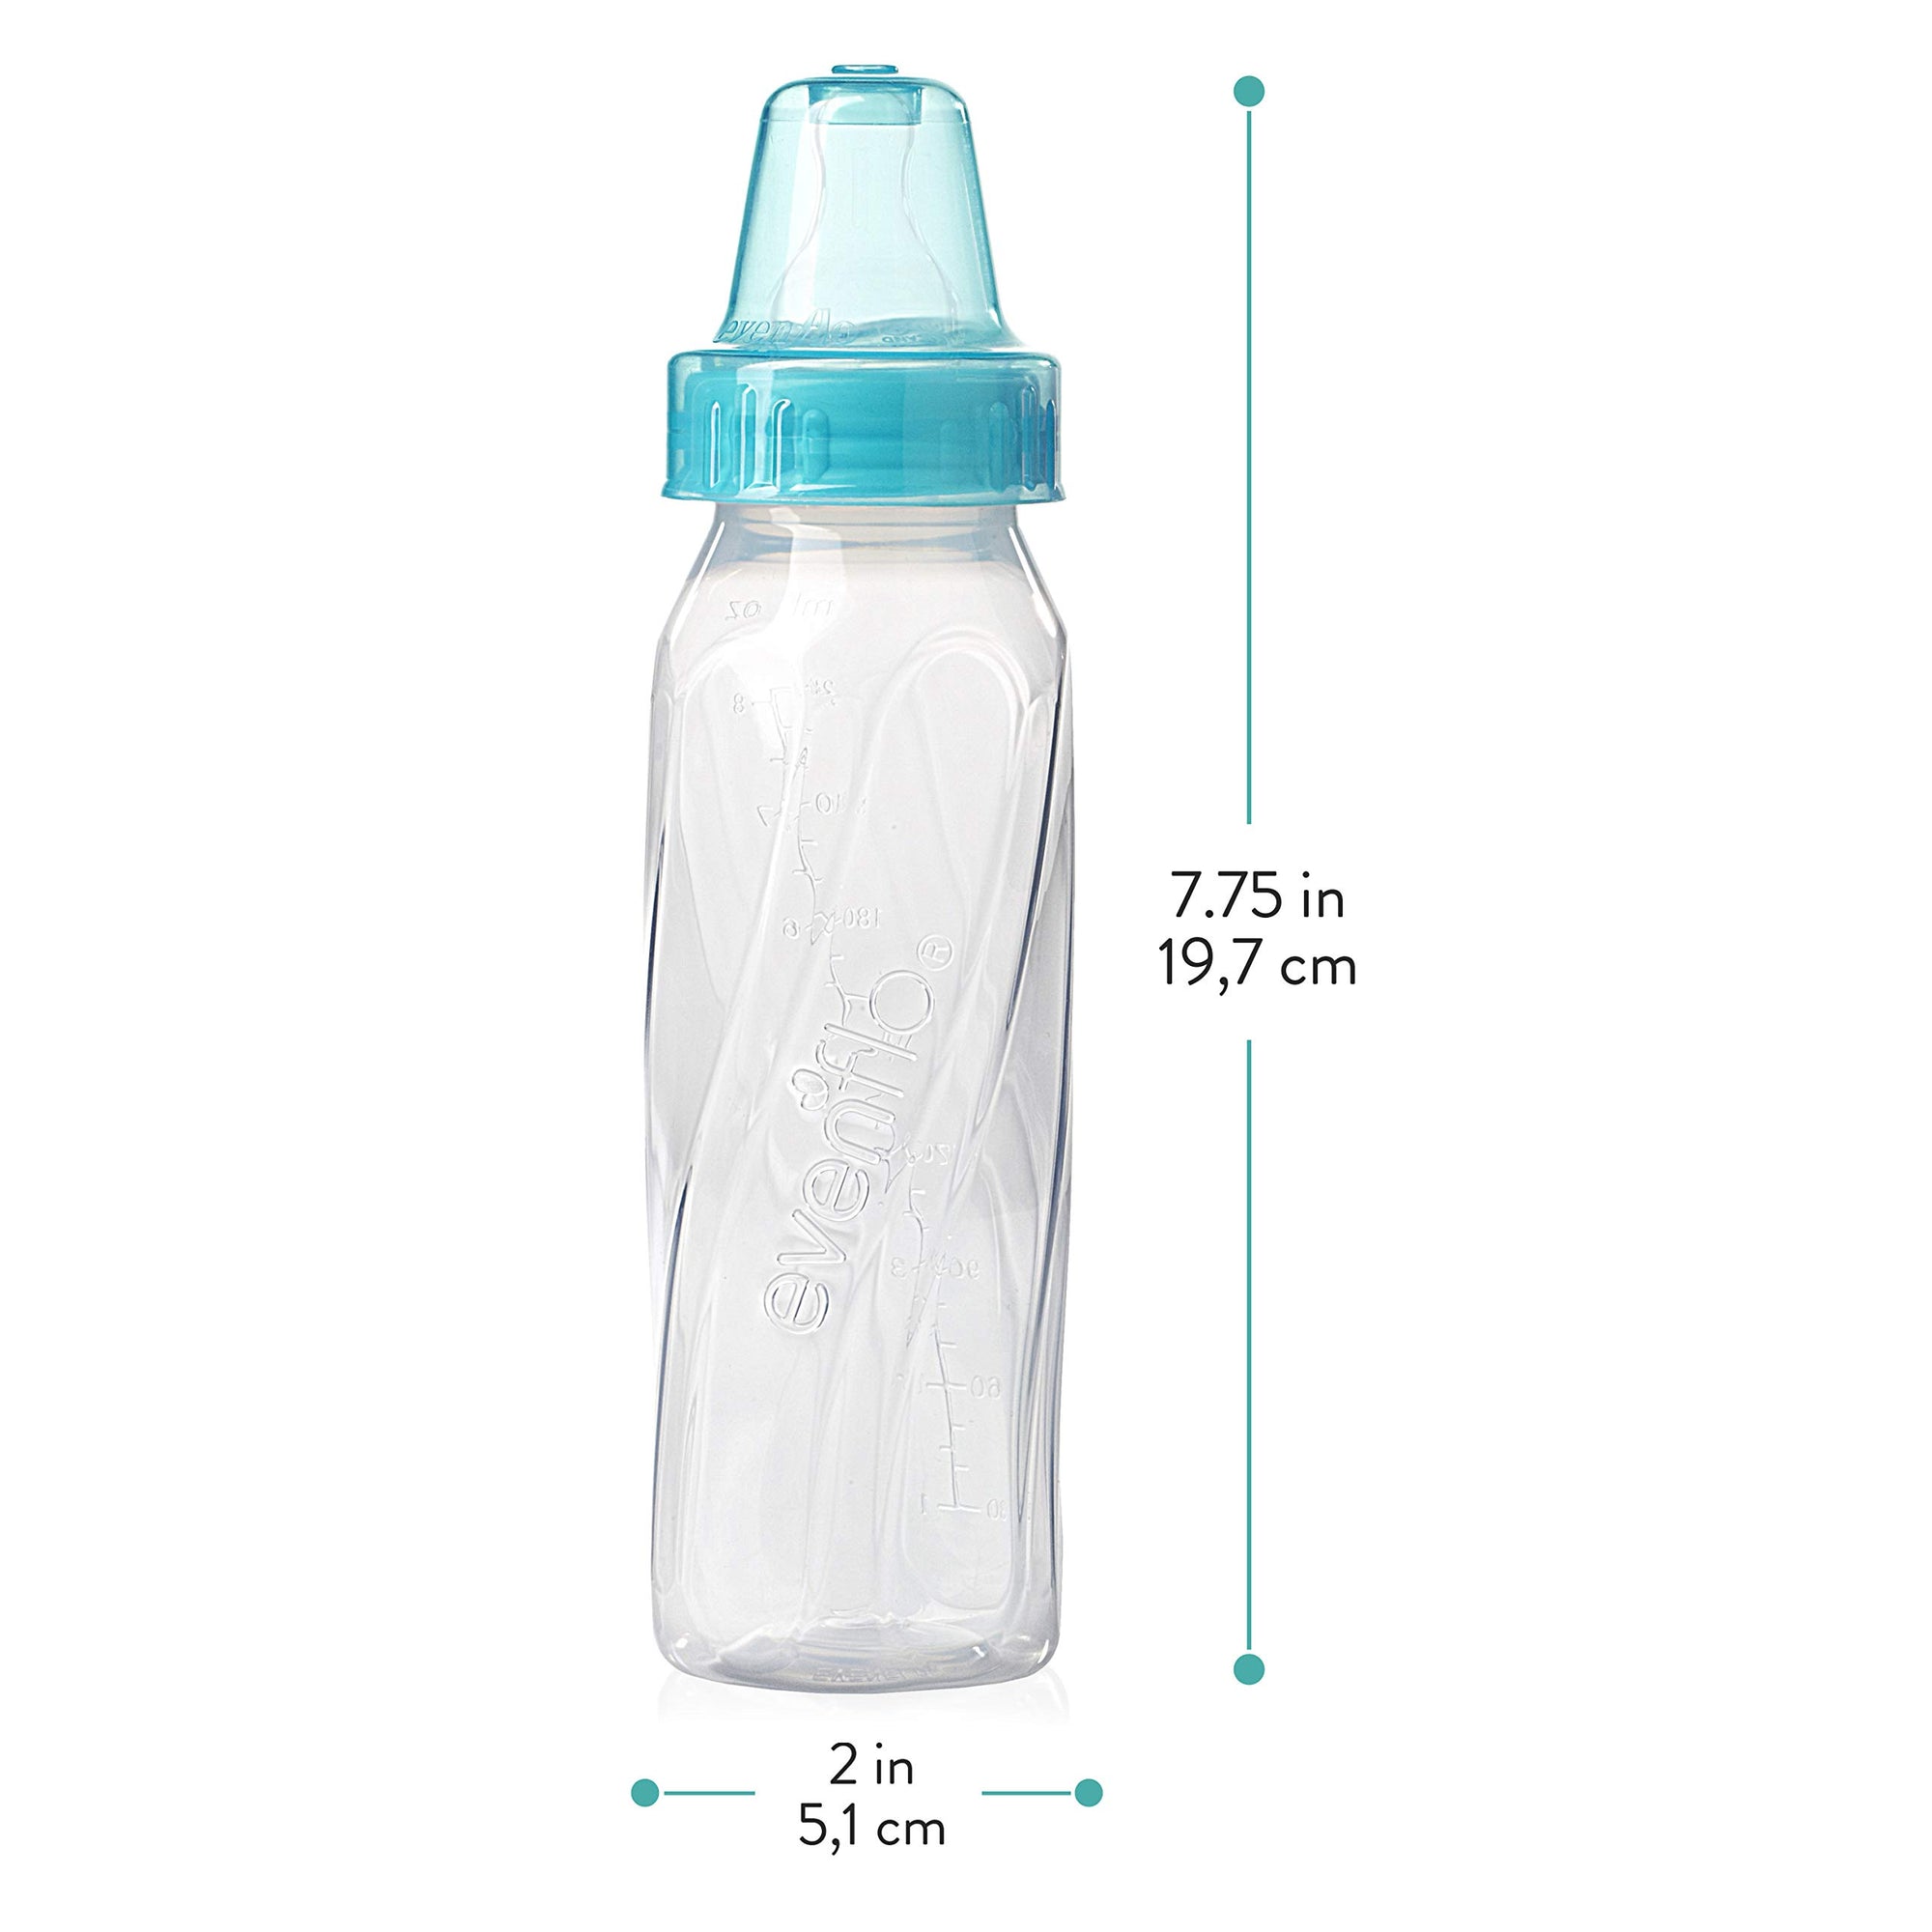 Evenflo Feeding Classic - Botellas de cuello estándar de plástico transparente para bebé, bebé y recién nacido, rosa/lavanda/verde azulado o verde/azul/verde azulado (los colores pueden variar), 8 onzas (paquete de 3)